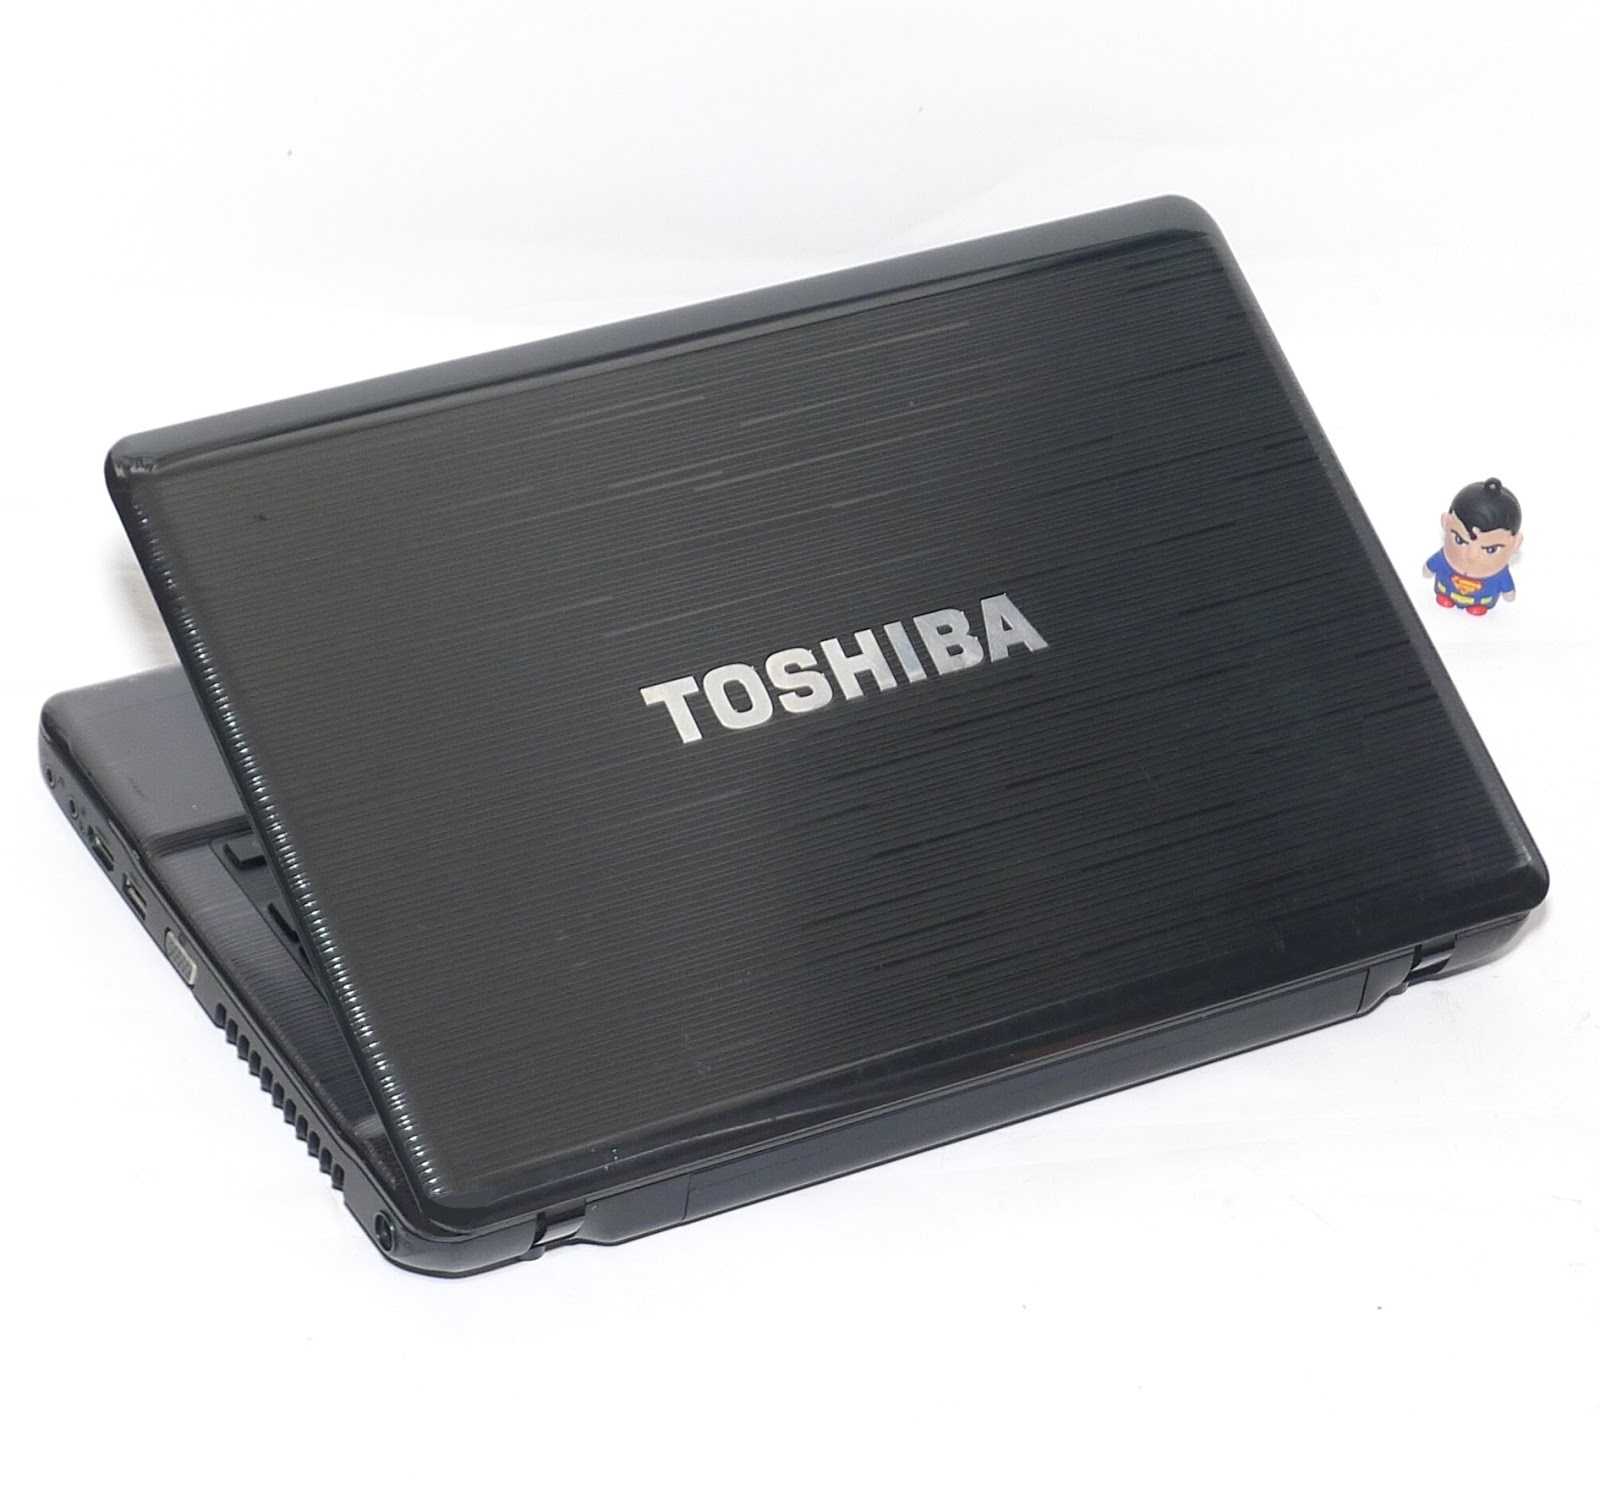 Ноутбук toshiba satellite c50d-a-l6s — купить, цена и характеристики, отзывы